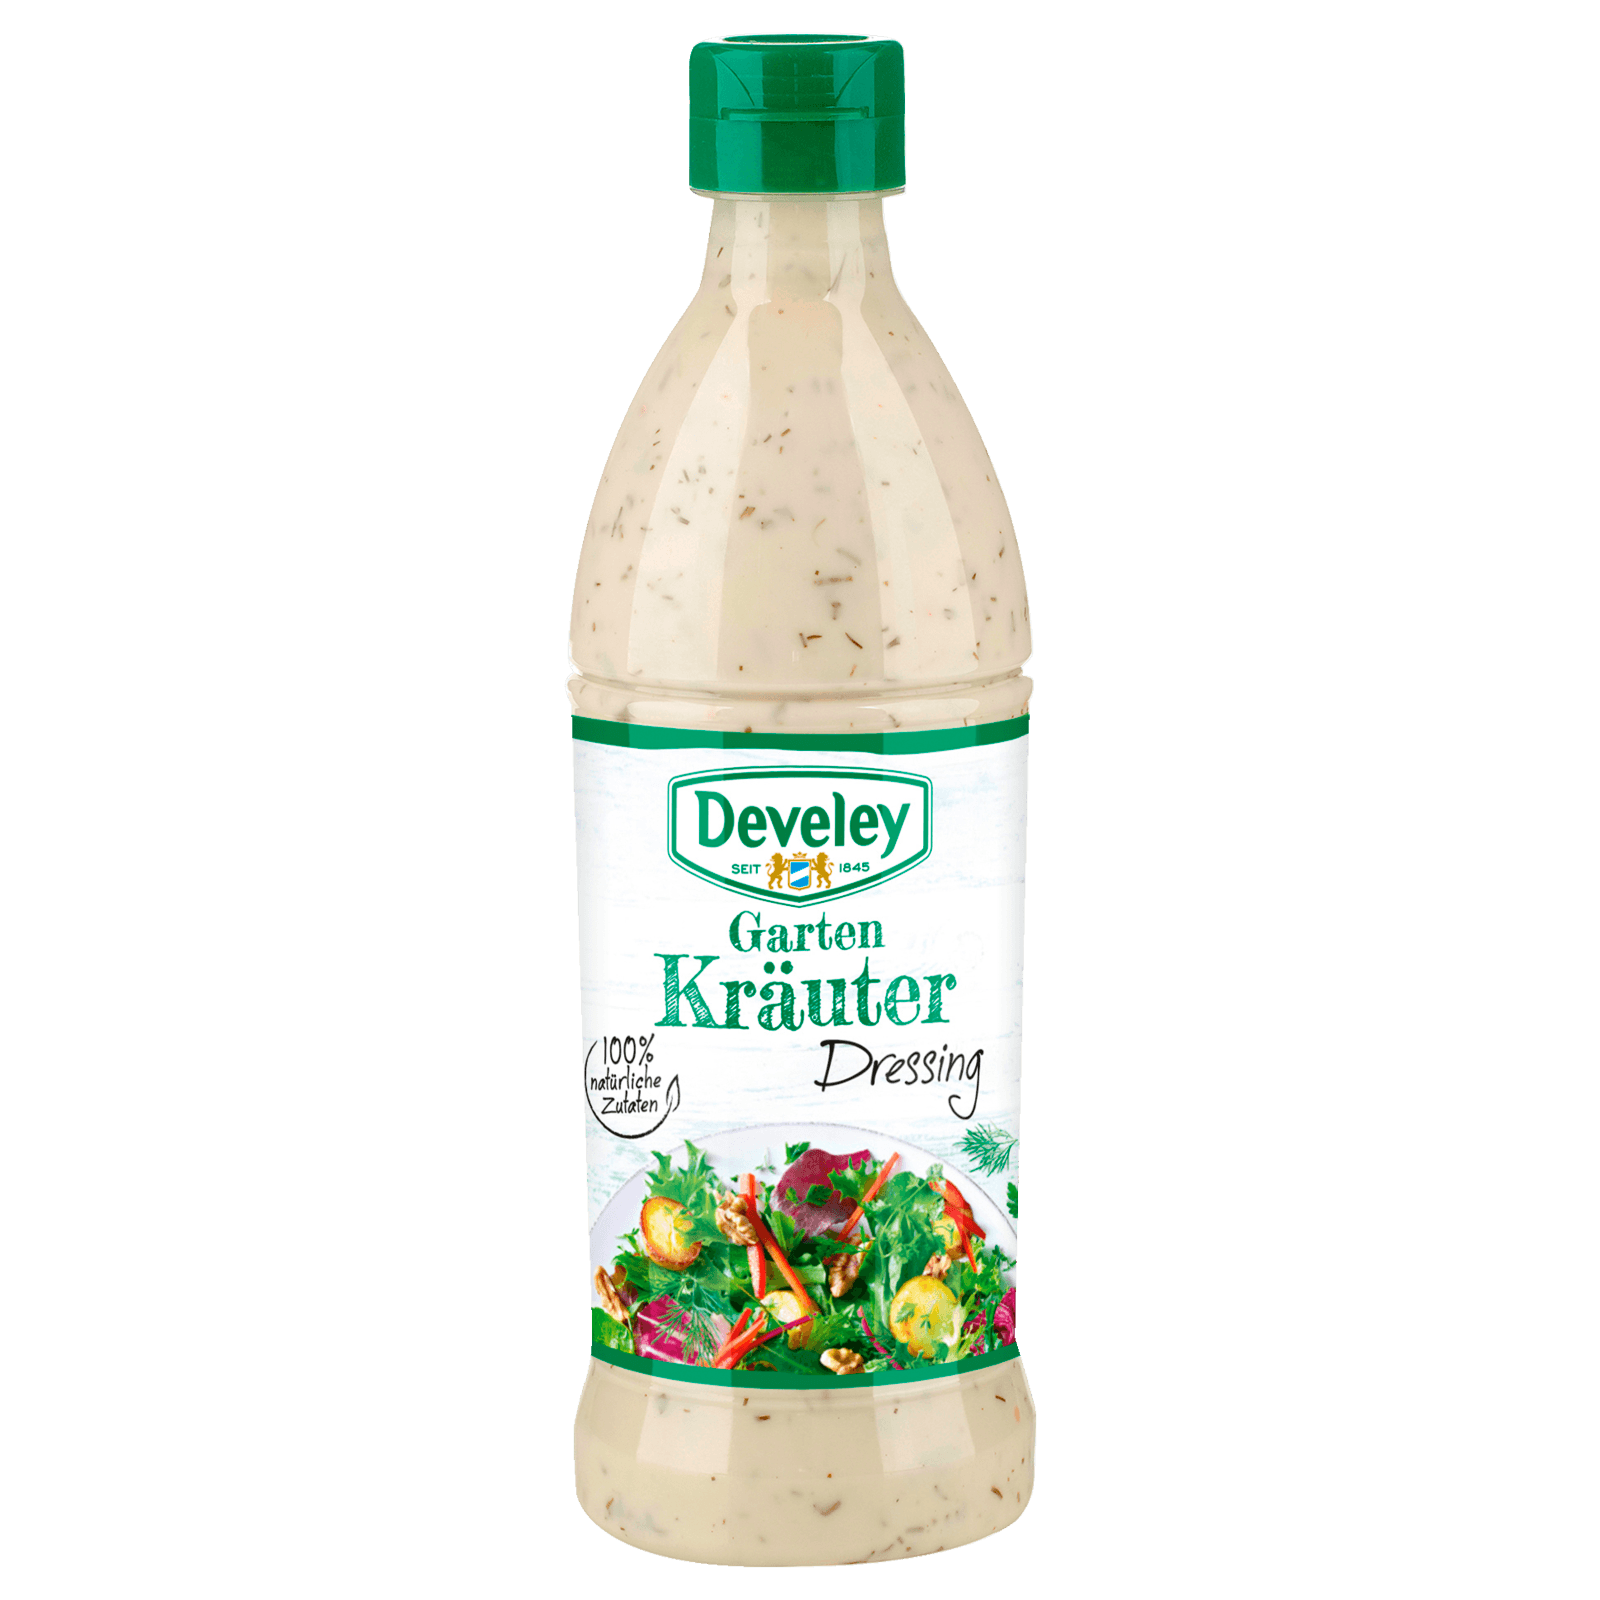 Develey Garten Kräuter Dressing 500ml bei REWE online bestellen!